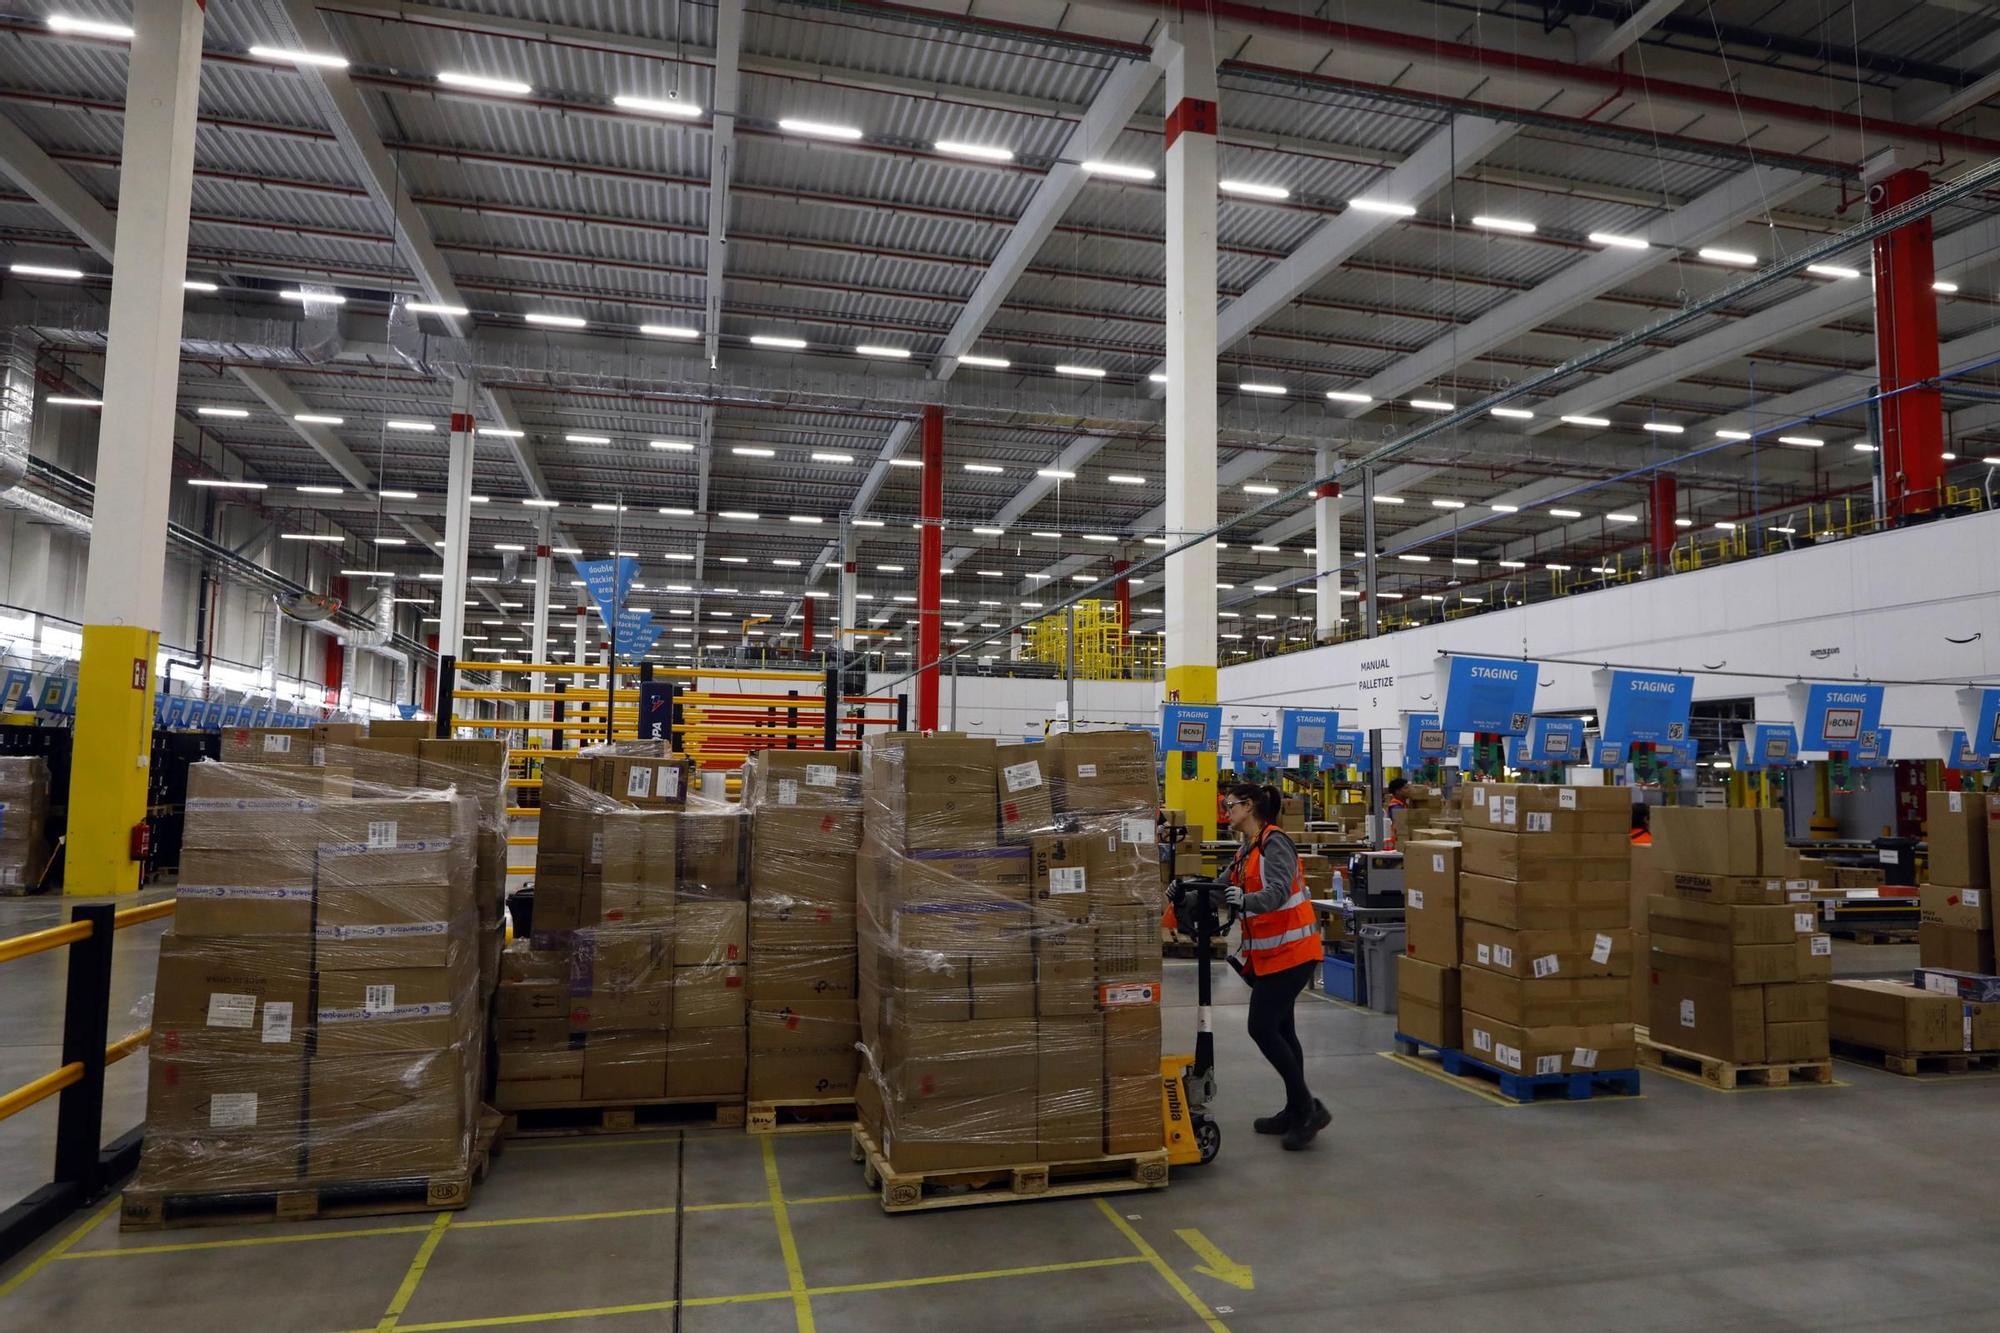 EN IMÁGENES | Así se trabaja en el gran centro de mercancías de Amazon en Zaragoza a las puertas del Black Friday